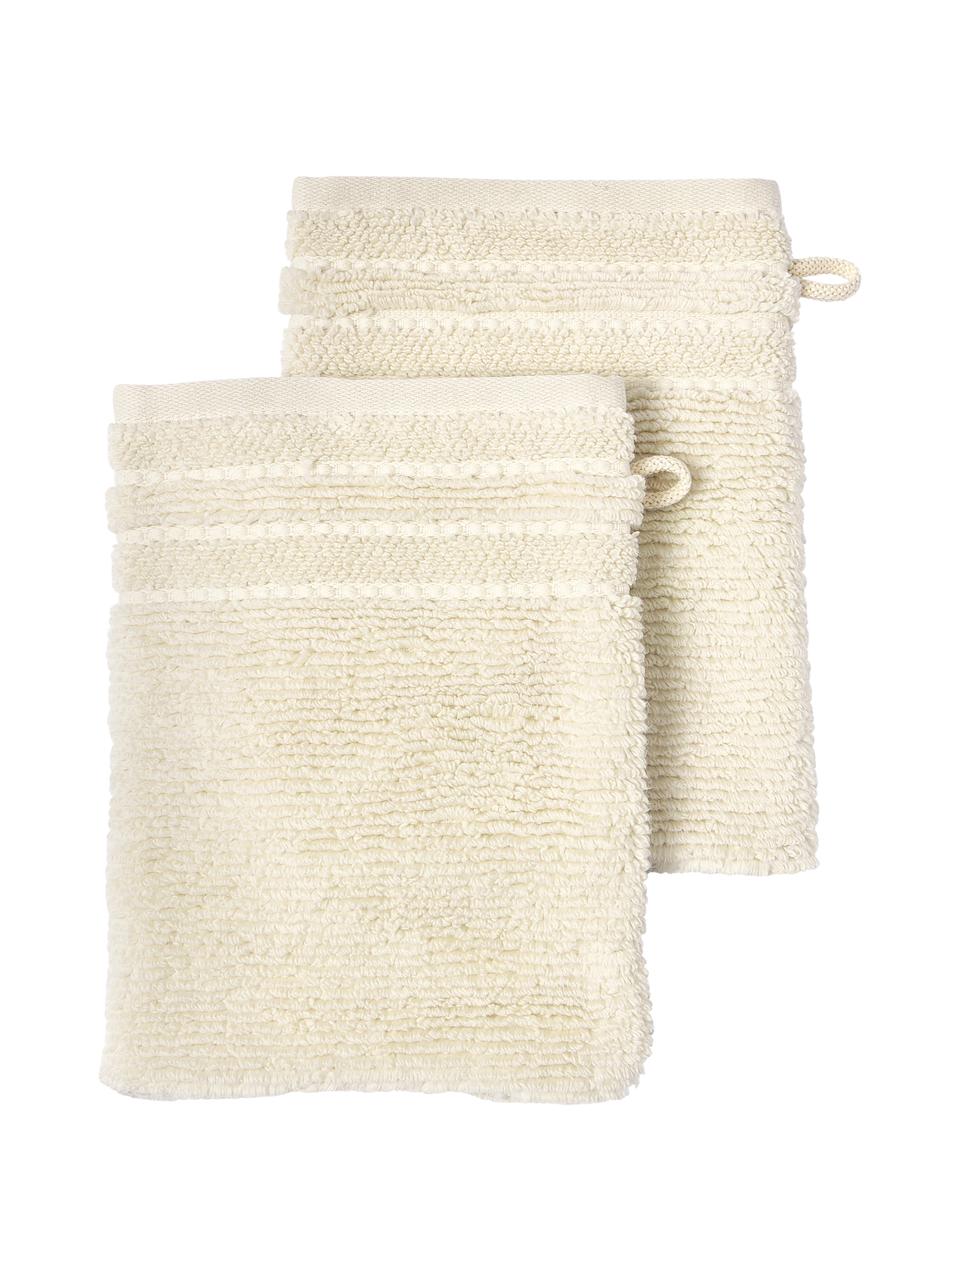 Manoplas de baño con borde a rayas Luxe, 2 uds., Blanco crema, An 16 x Al 22 cm